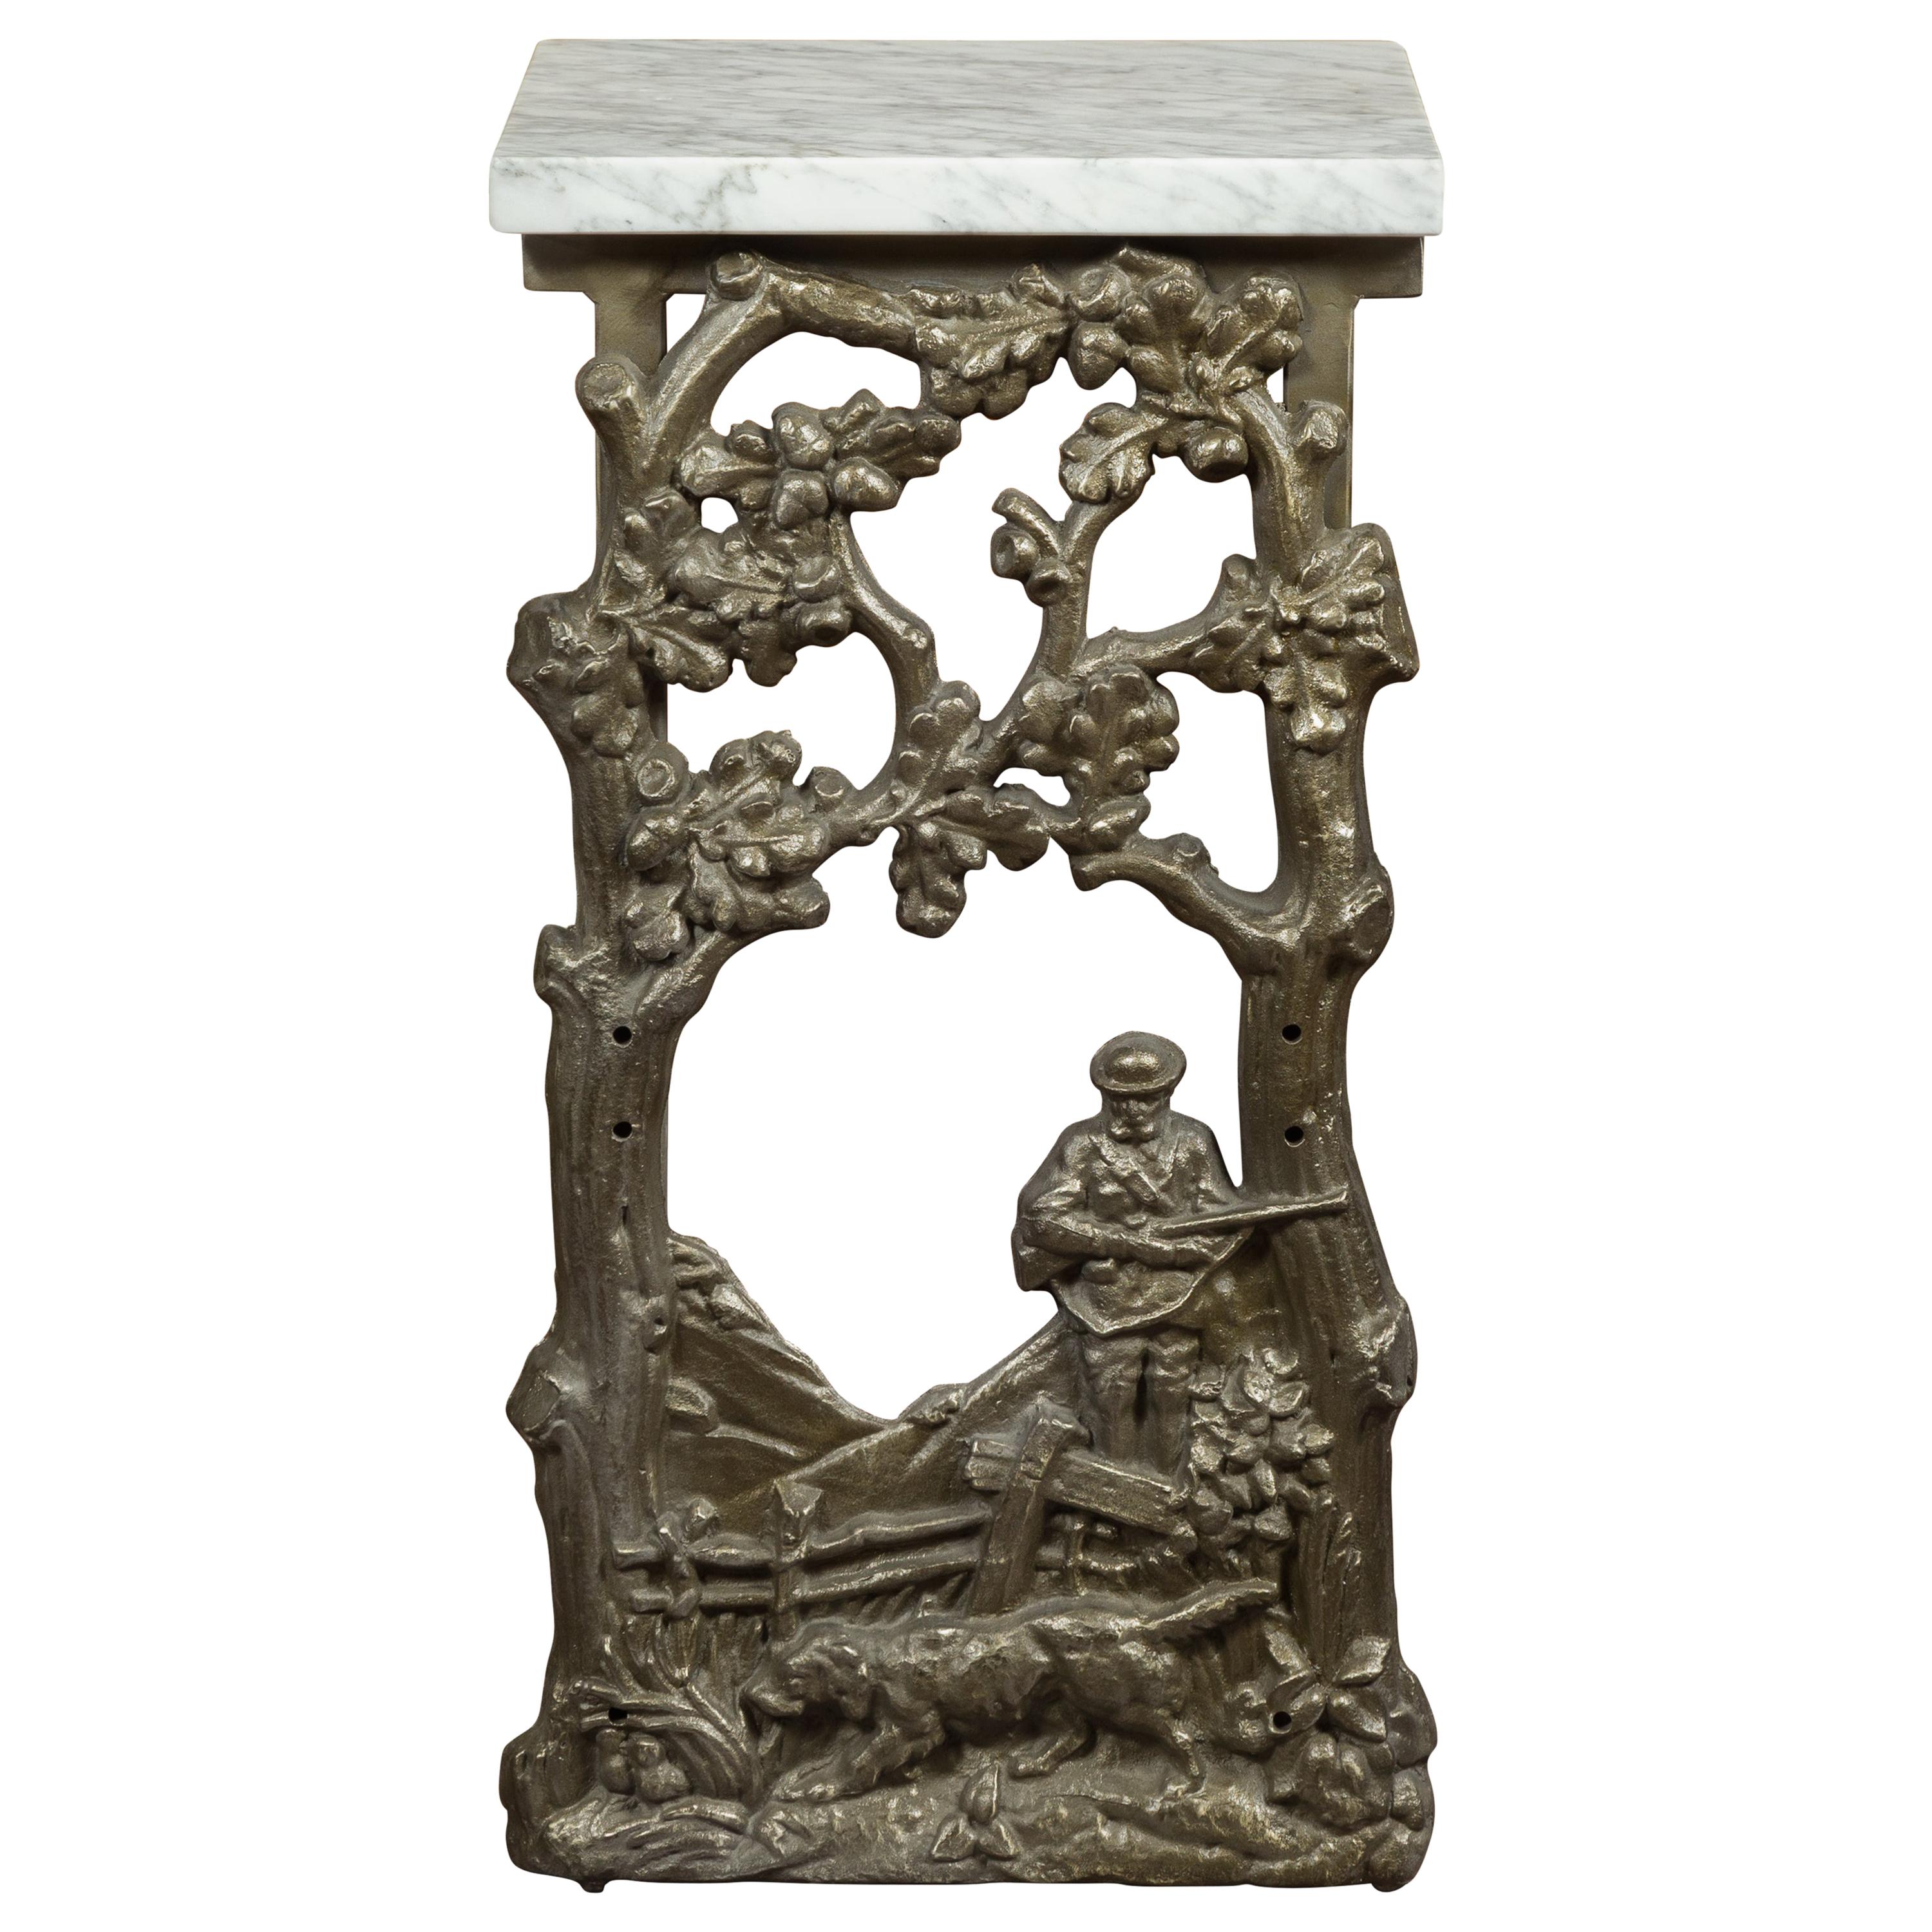 Fragment de fer français des années 1920 représentant un chasseur transformé en table avec plateau en marbre